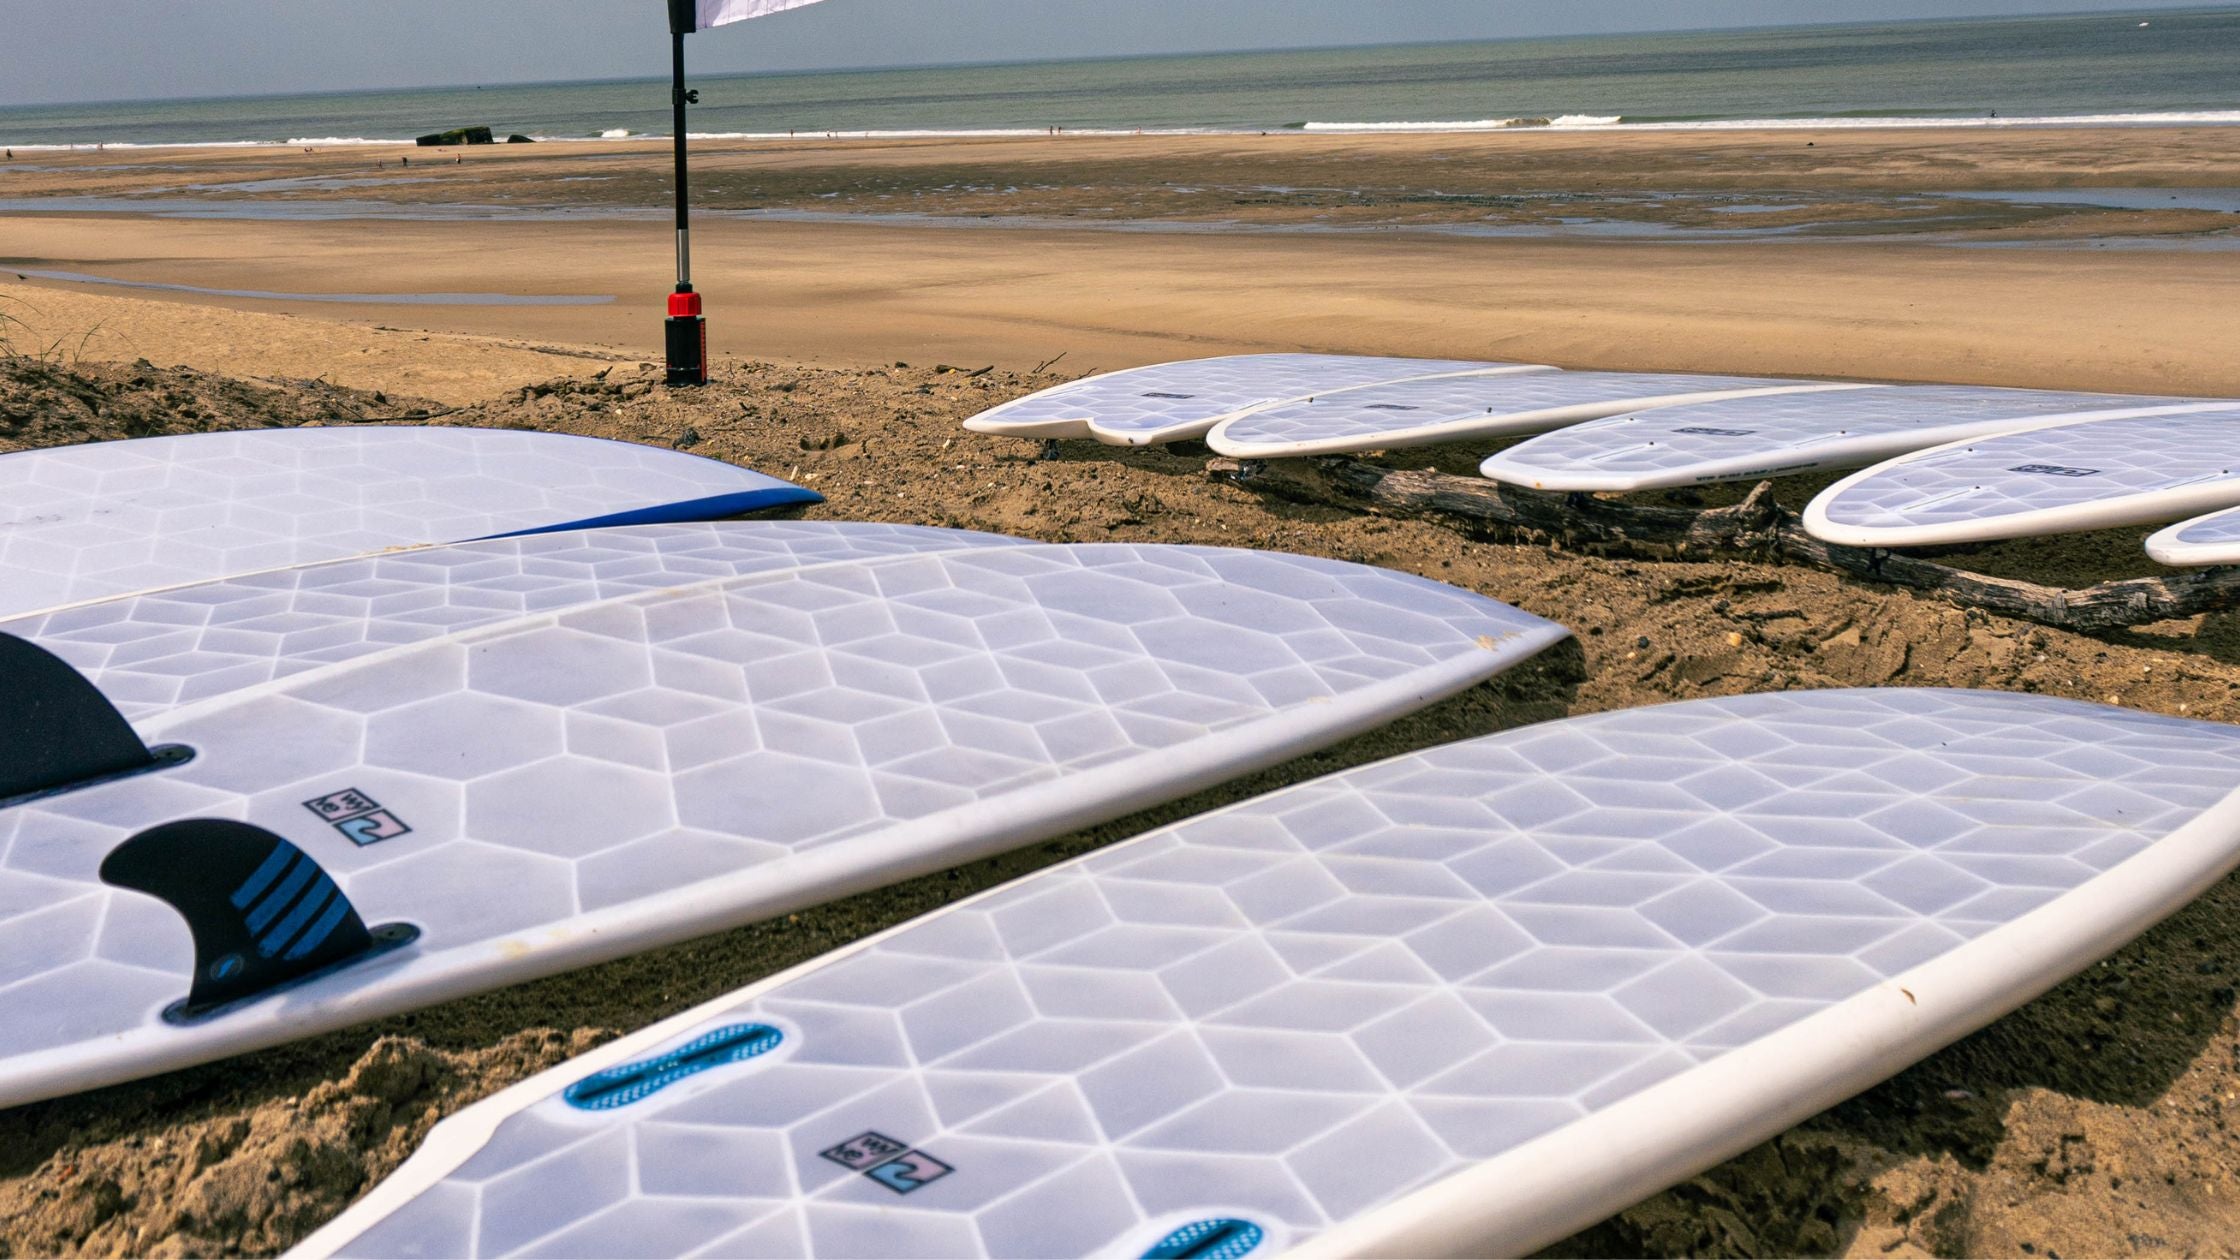 Les planches de surf imprimées en 3D arrivent en France - Surf